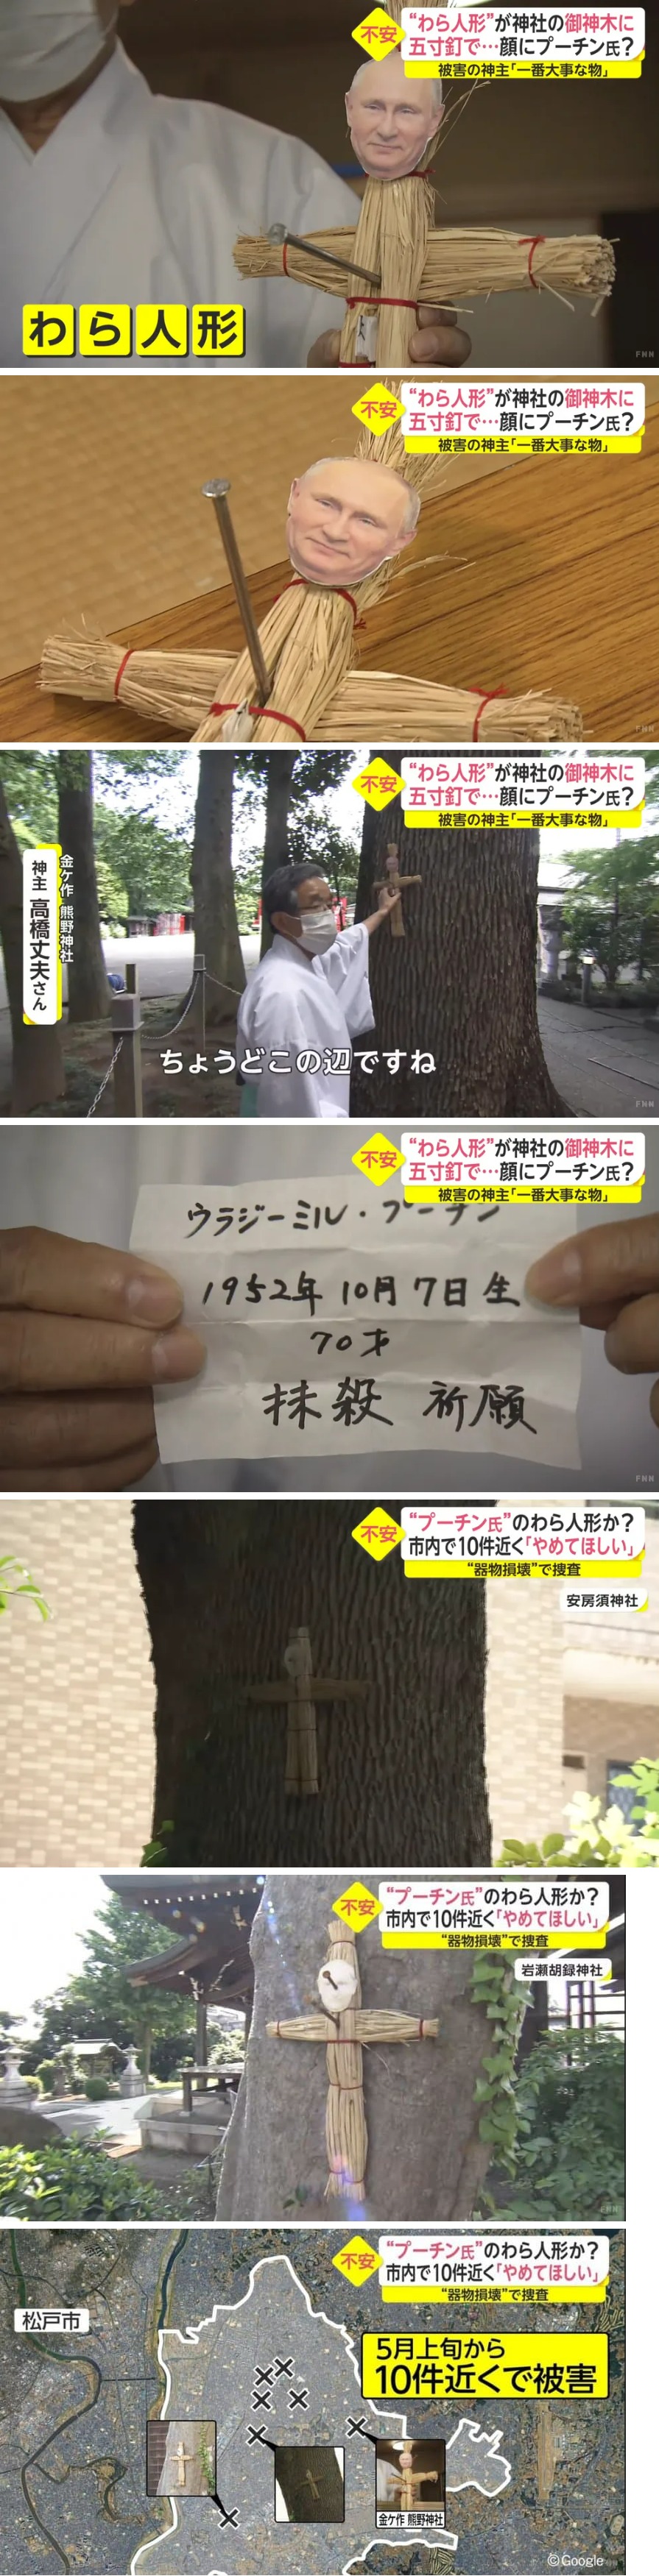 일본에서 발견된 저주 인형